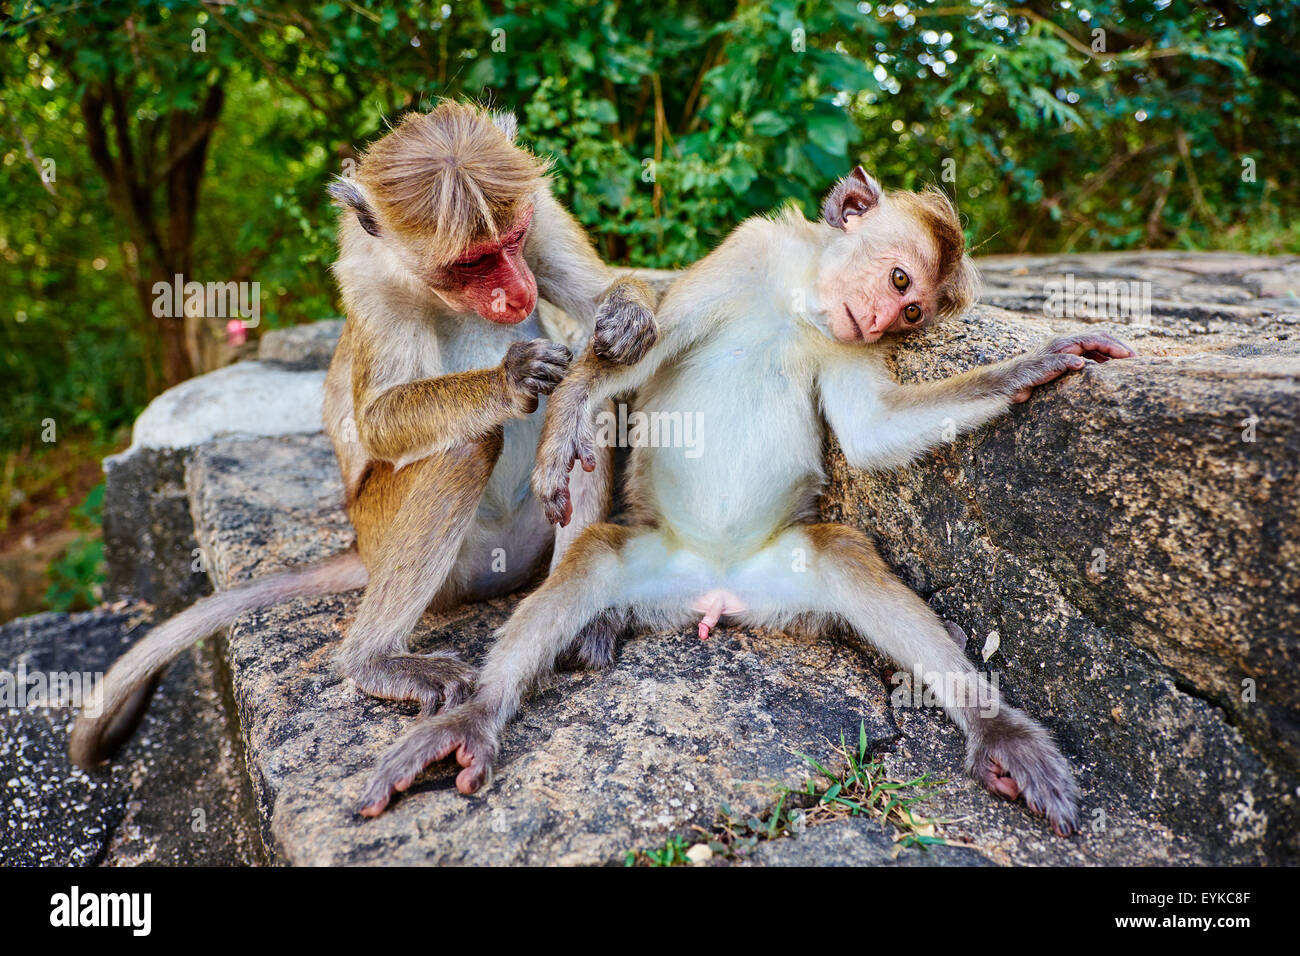 Sri Lanka, Ceylon, Nord provincia centrale, Dambulla, buddista tempio nella grotta, scimmie Foto Stock